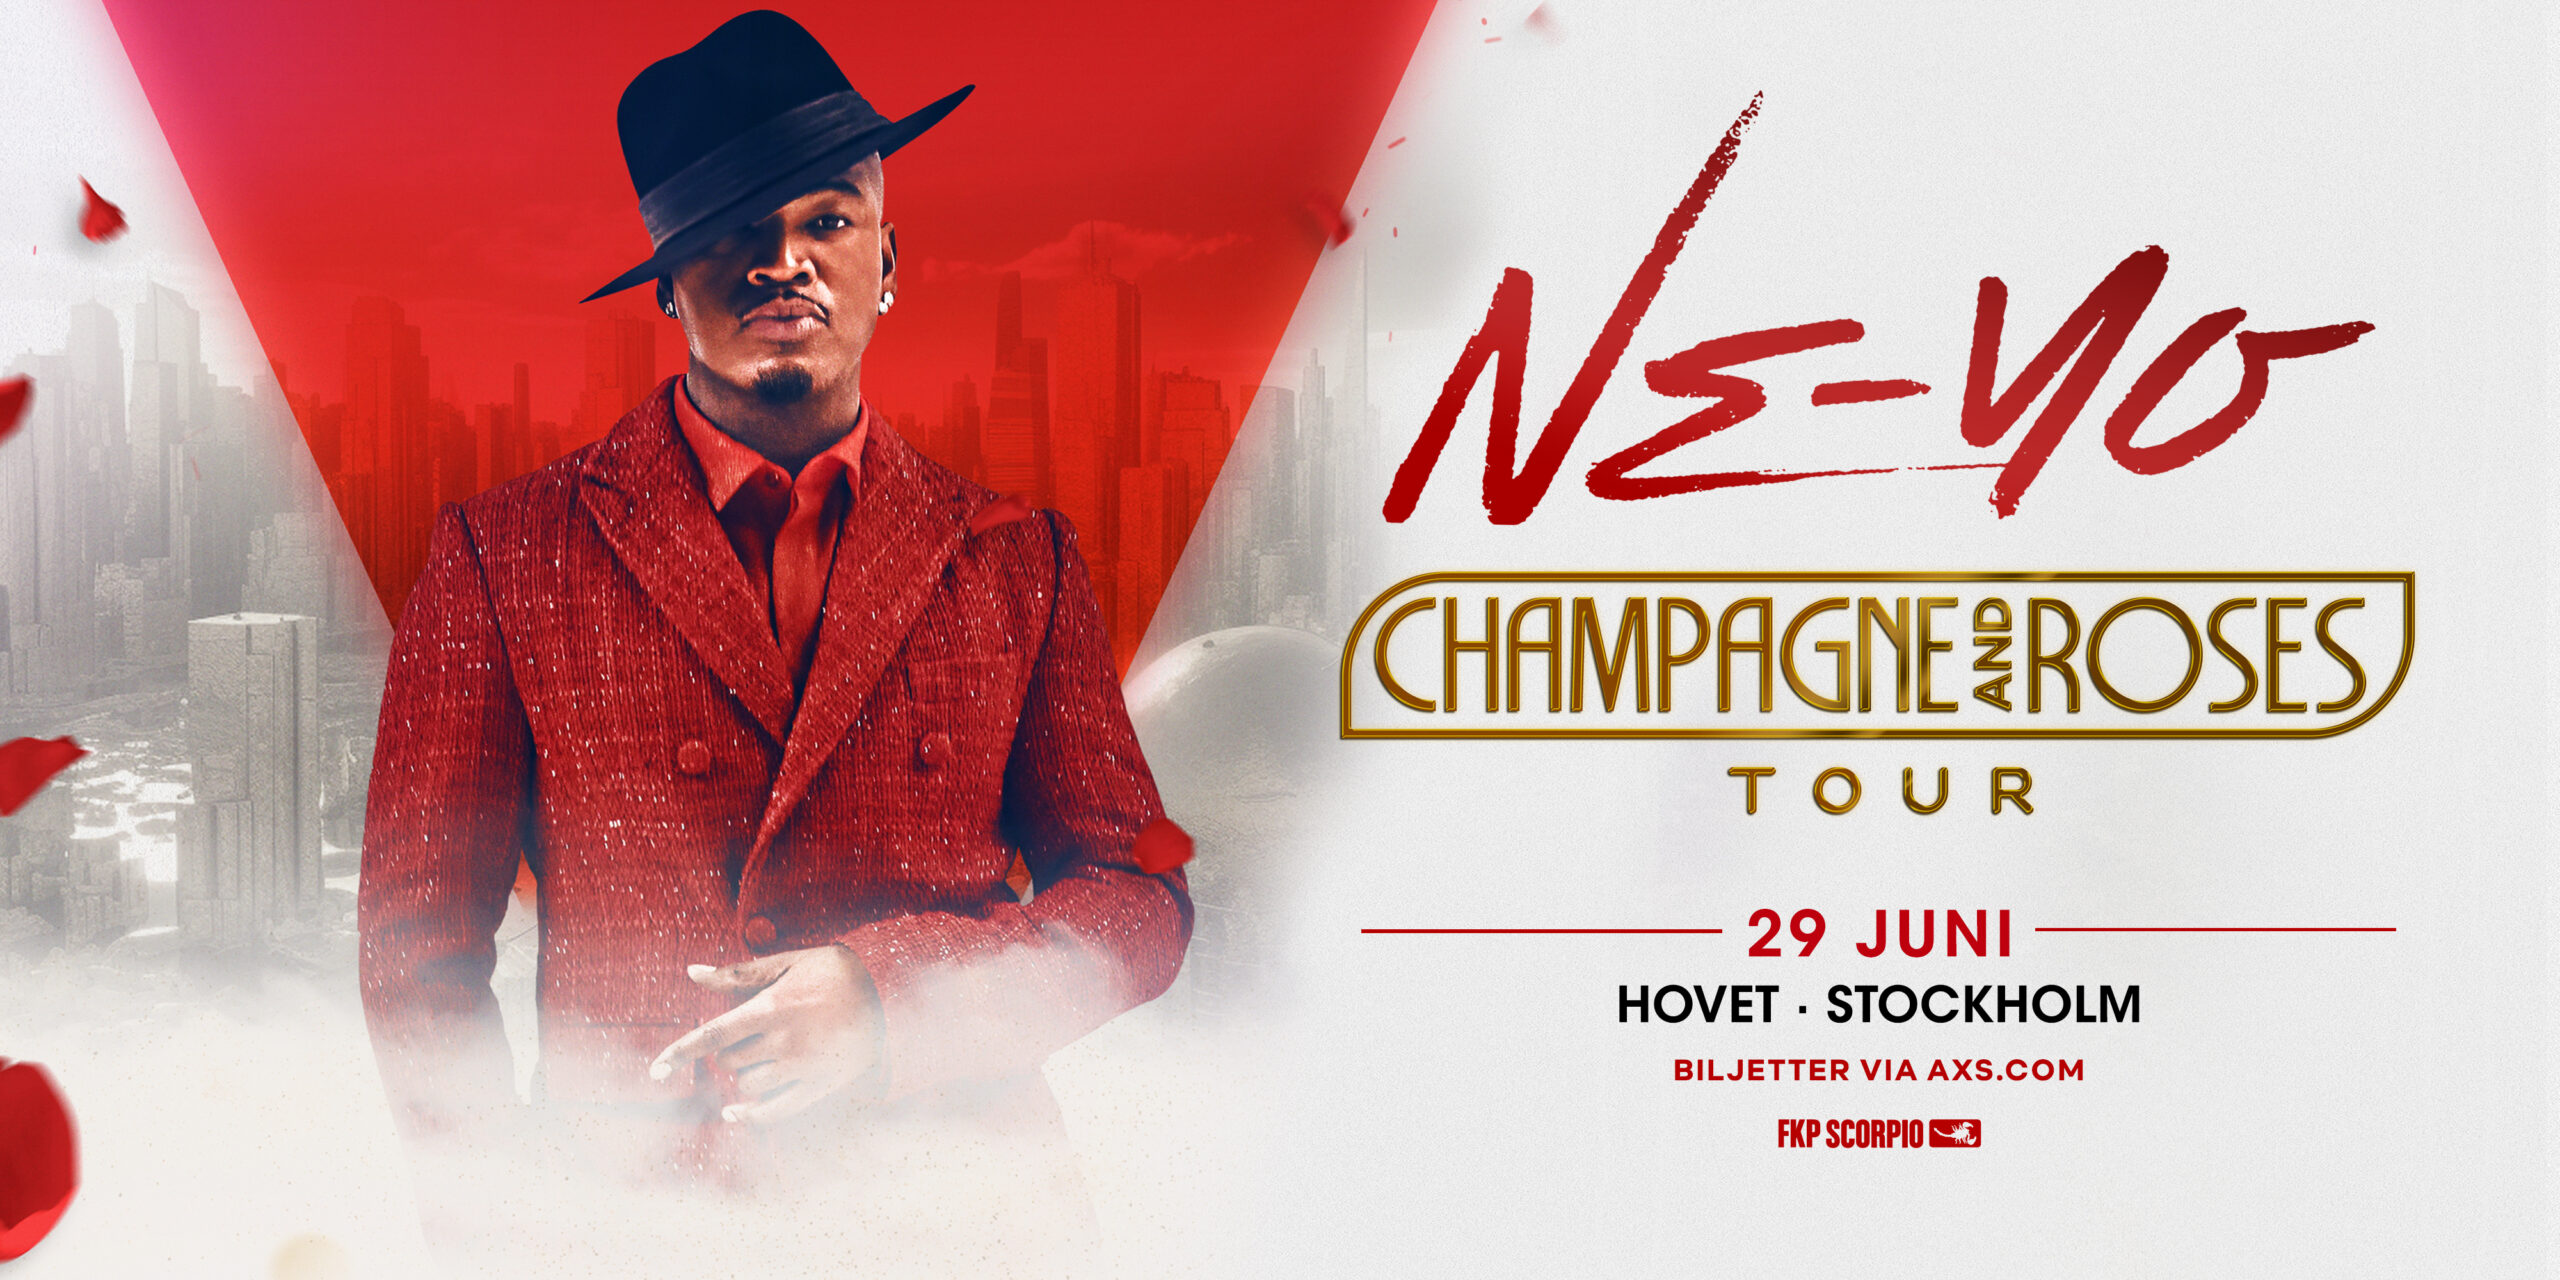 NE-YO: Champagne & Roses Tour